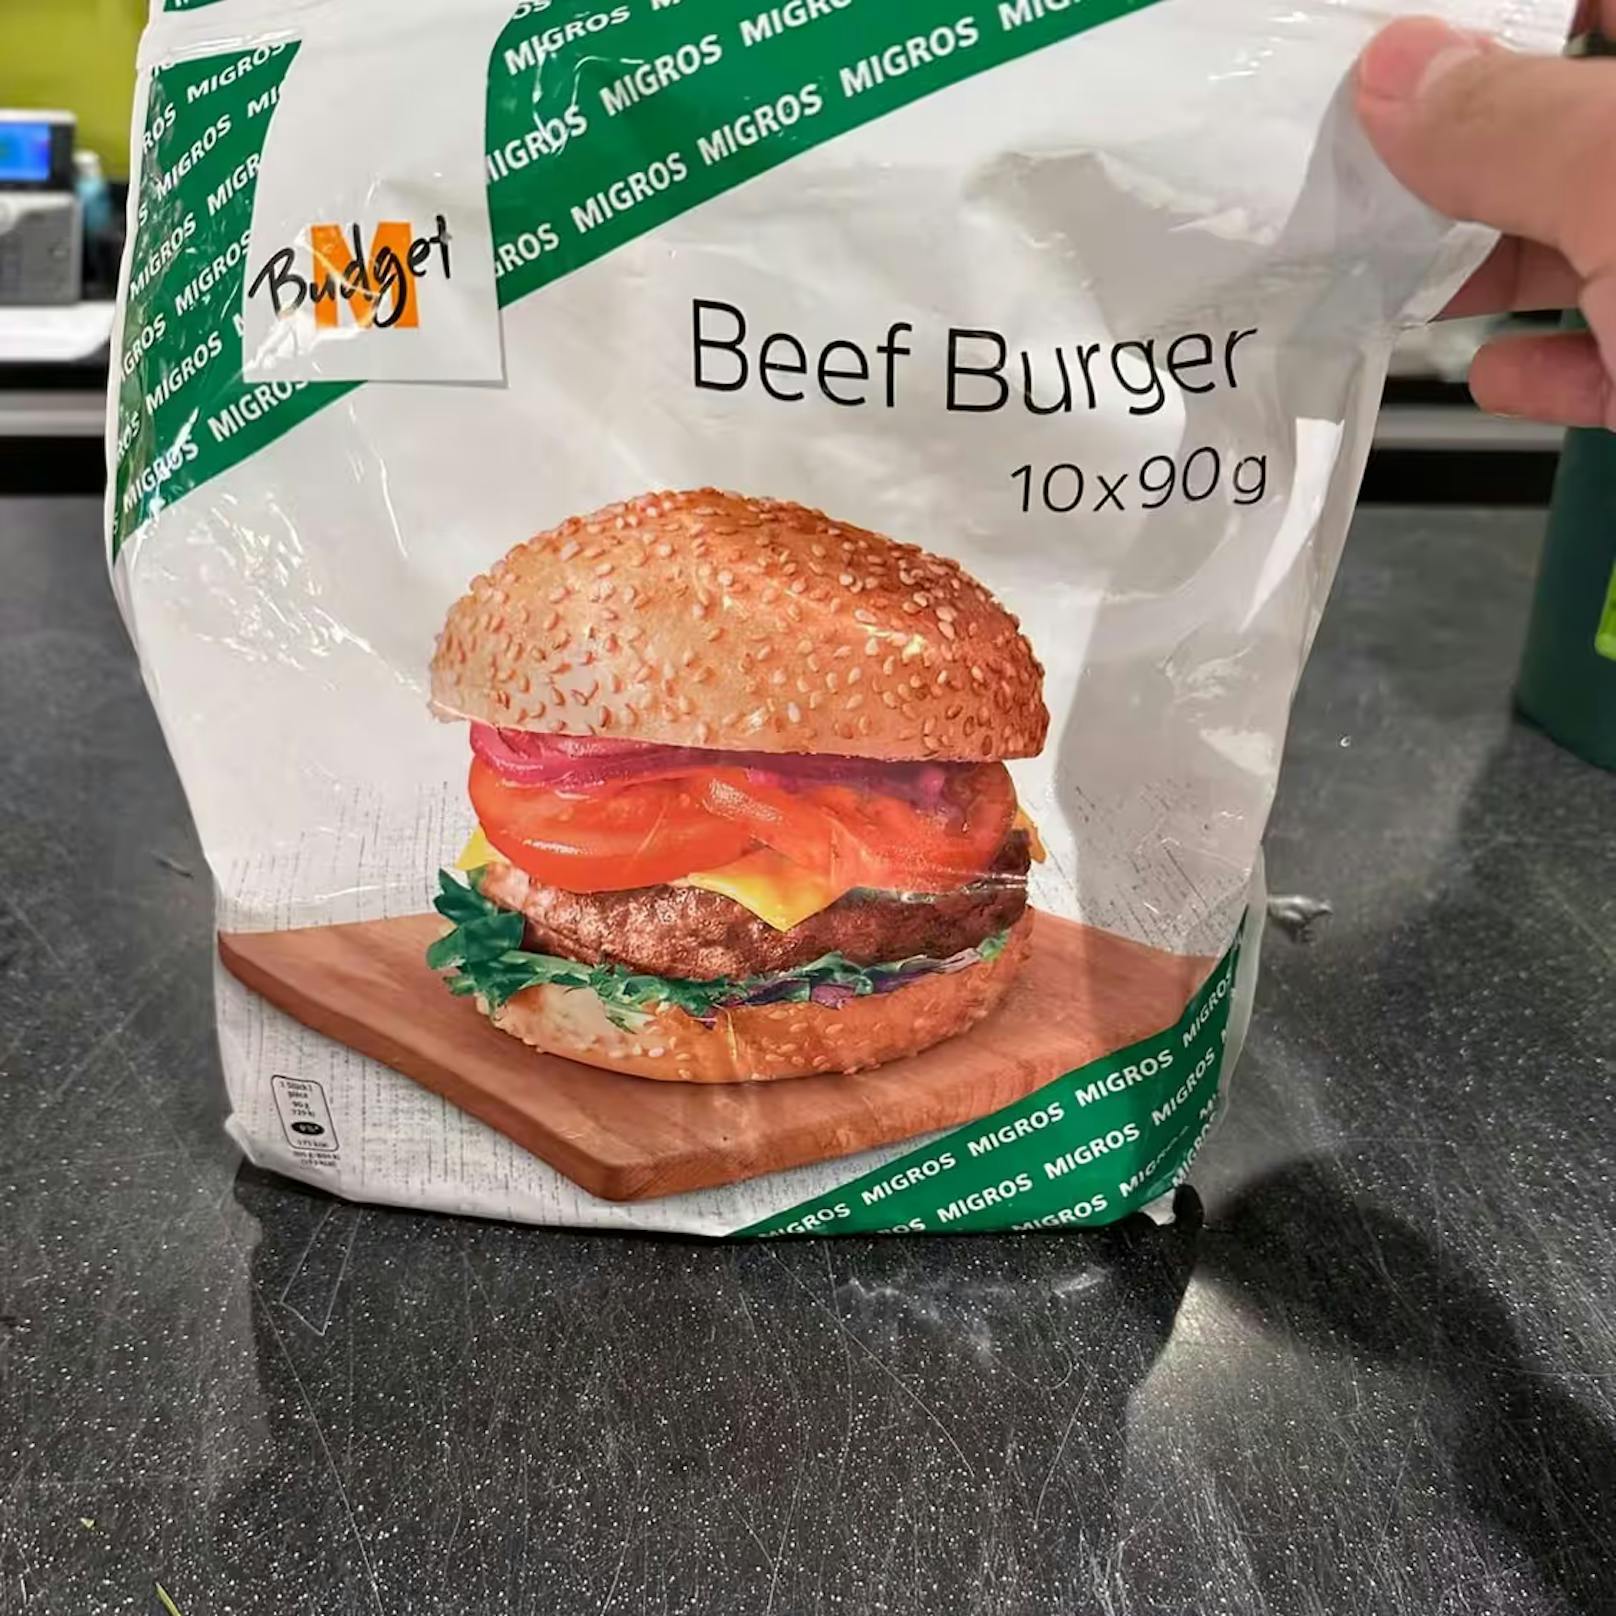 In diesem M-Budget-Burgerfleisch haben sich die Plastikteilchen befunden. Offiziell entschuldigt hat sich der Großverteiler bisher nicht.